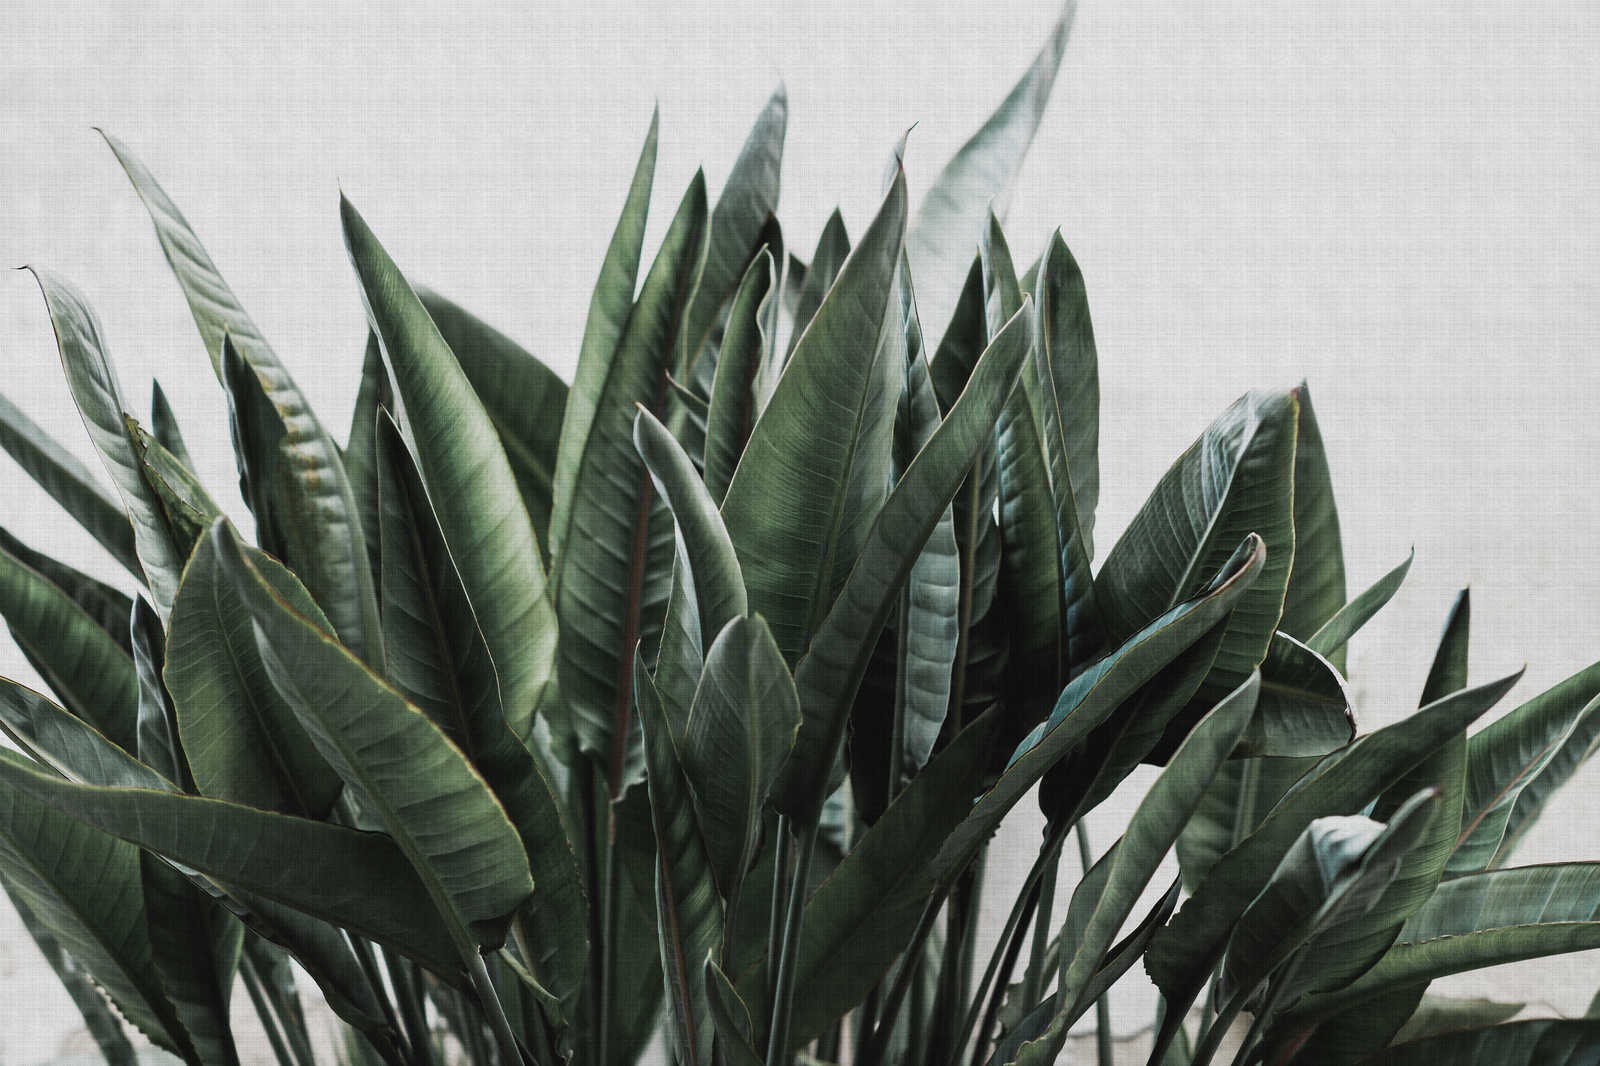             Jungla urbana 2 - Cuadro lienzo hojas de palmera, estructura lino natural plantas exóticas - 0,90 m x 0,60 m
        